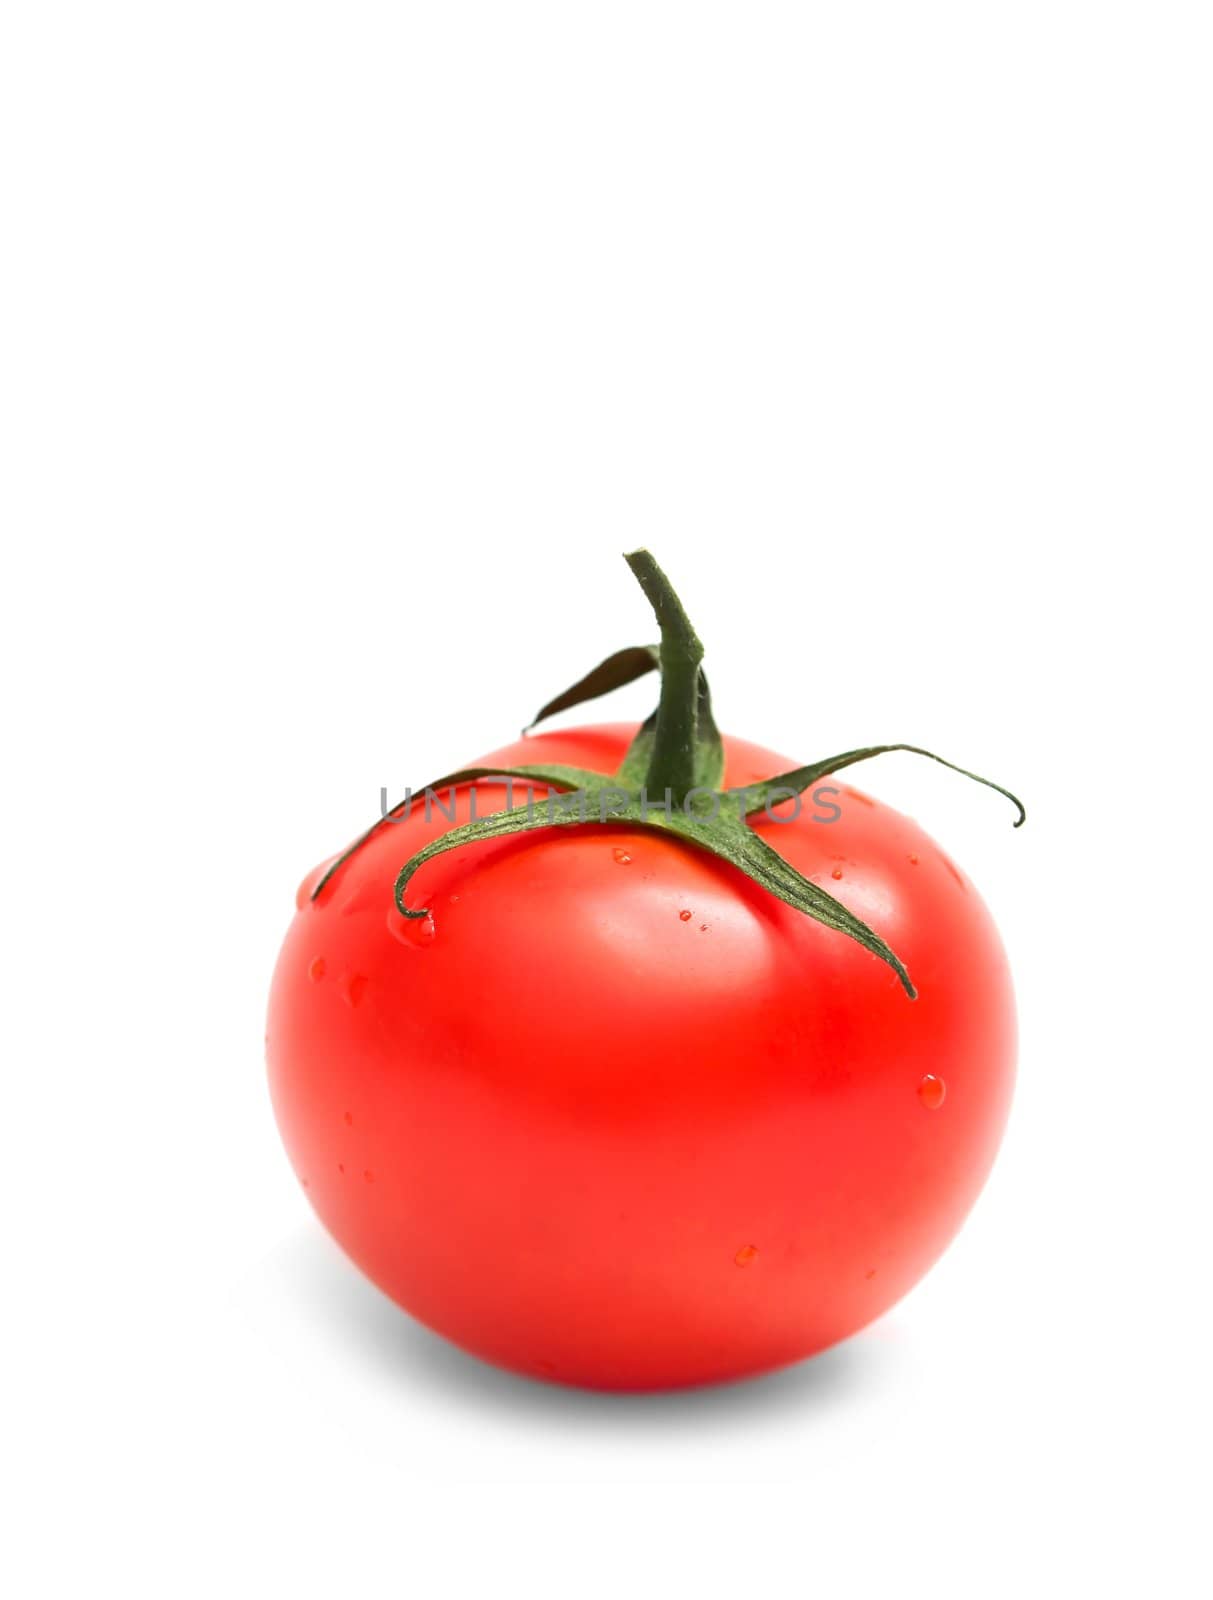 Tomato on white background